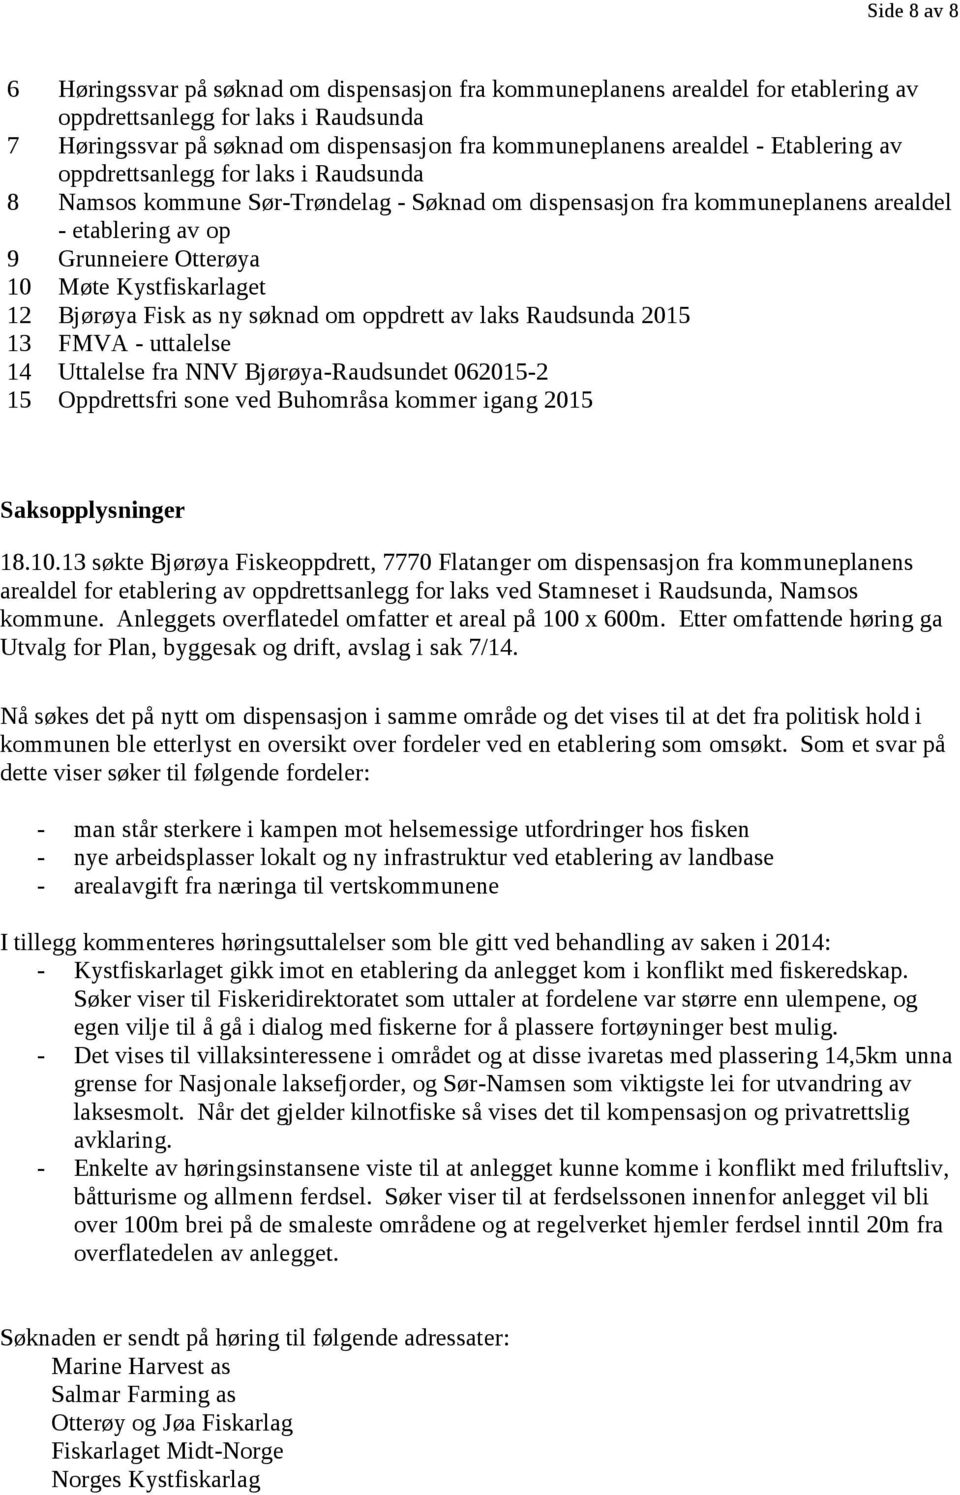 Kystfiskarlaget 12 Bjørøya Fisk as ny søknad om oppdrett av laks Raudsunda 2015 13 FMVA - uttalelse 14 Uttalelse fra NNV Bjørøya-Raudsundet 062015-2 15 Oppdrettsfri sone ved Buhområsa kommer igang